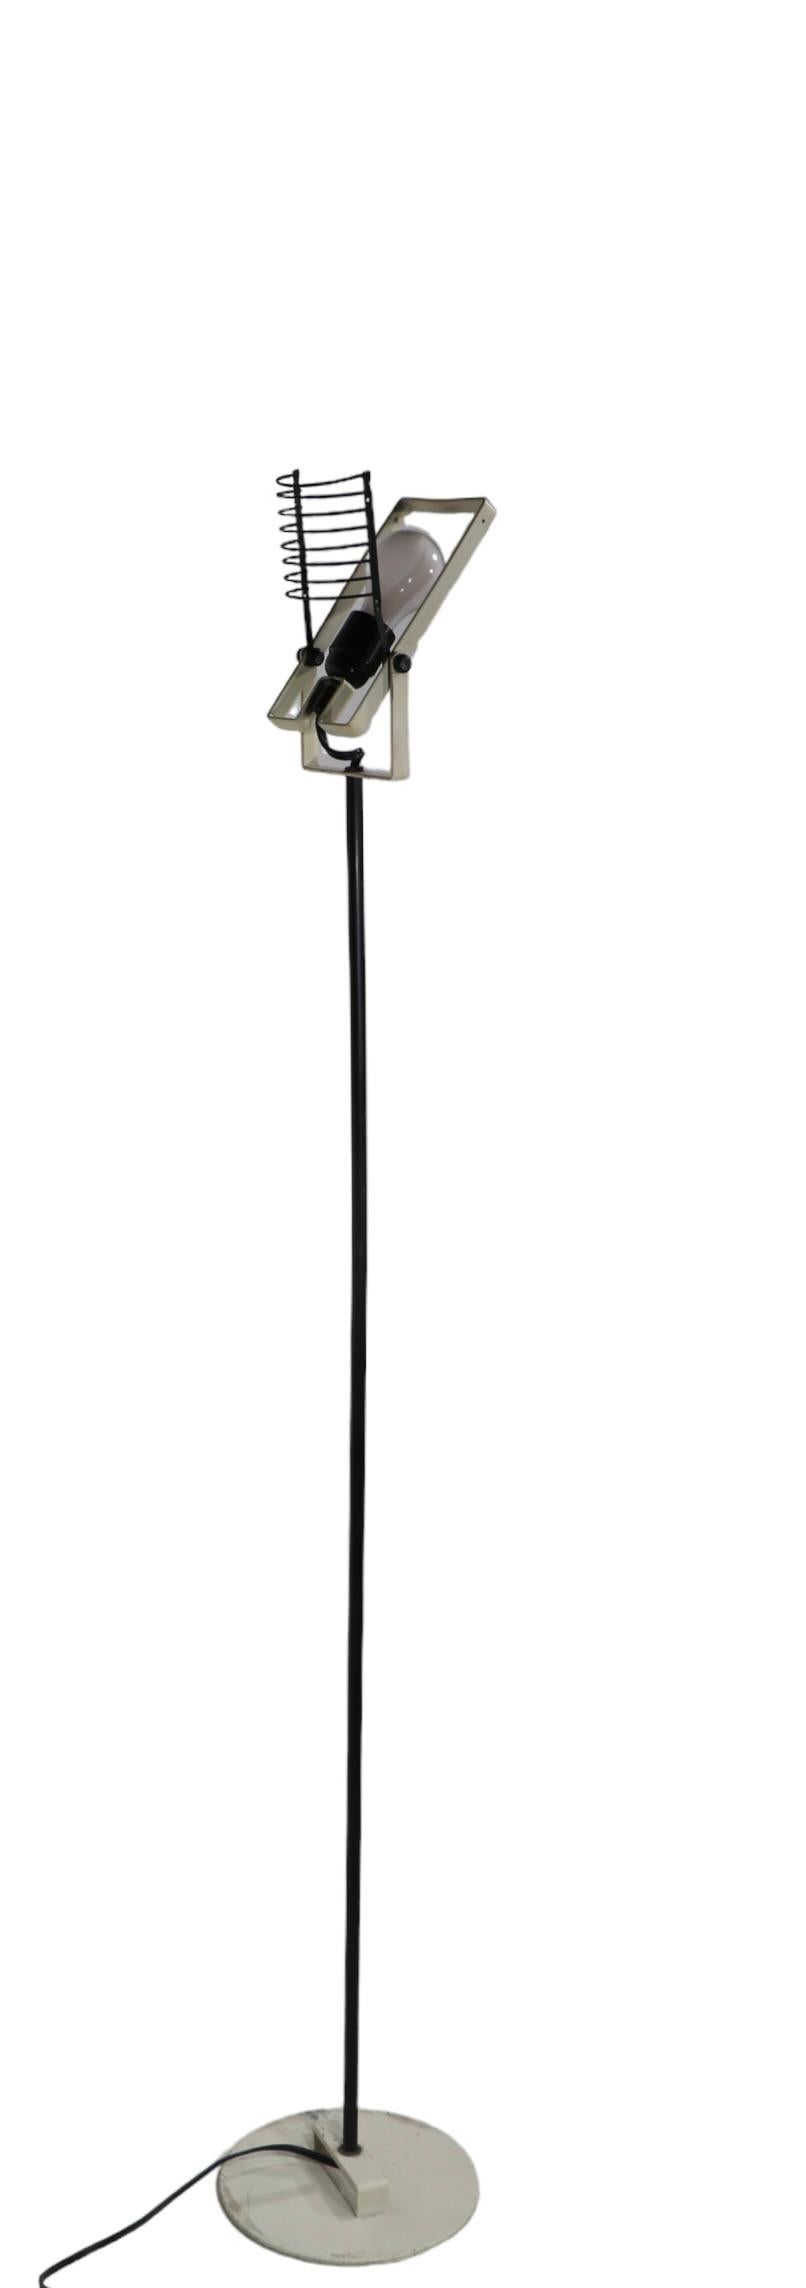 Post-Modern Artimedi Sintesi Floor Lamp by Ernesto Gismondi Made in Italy 1970's For Sale